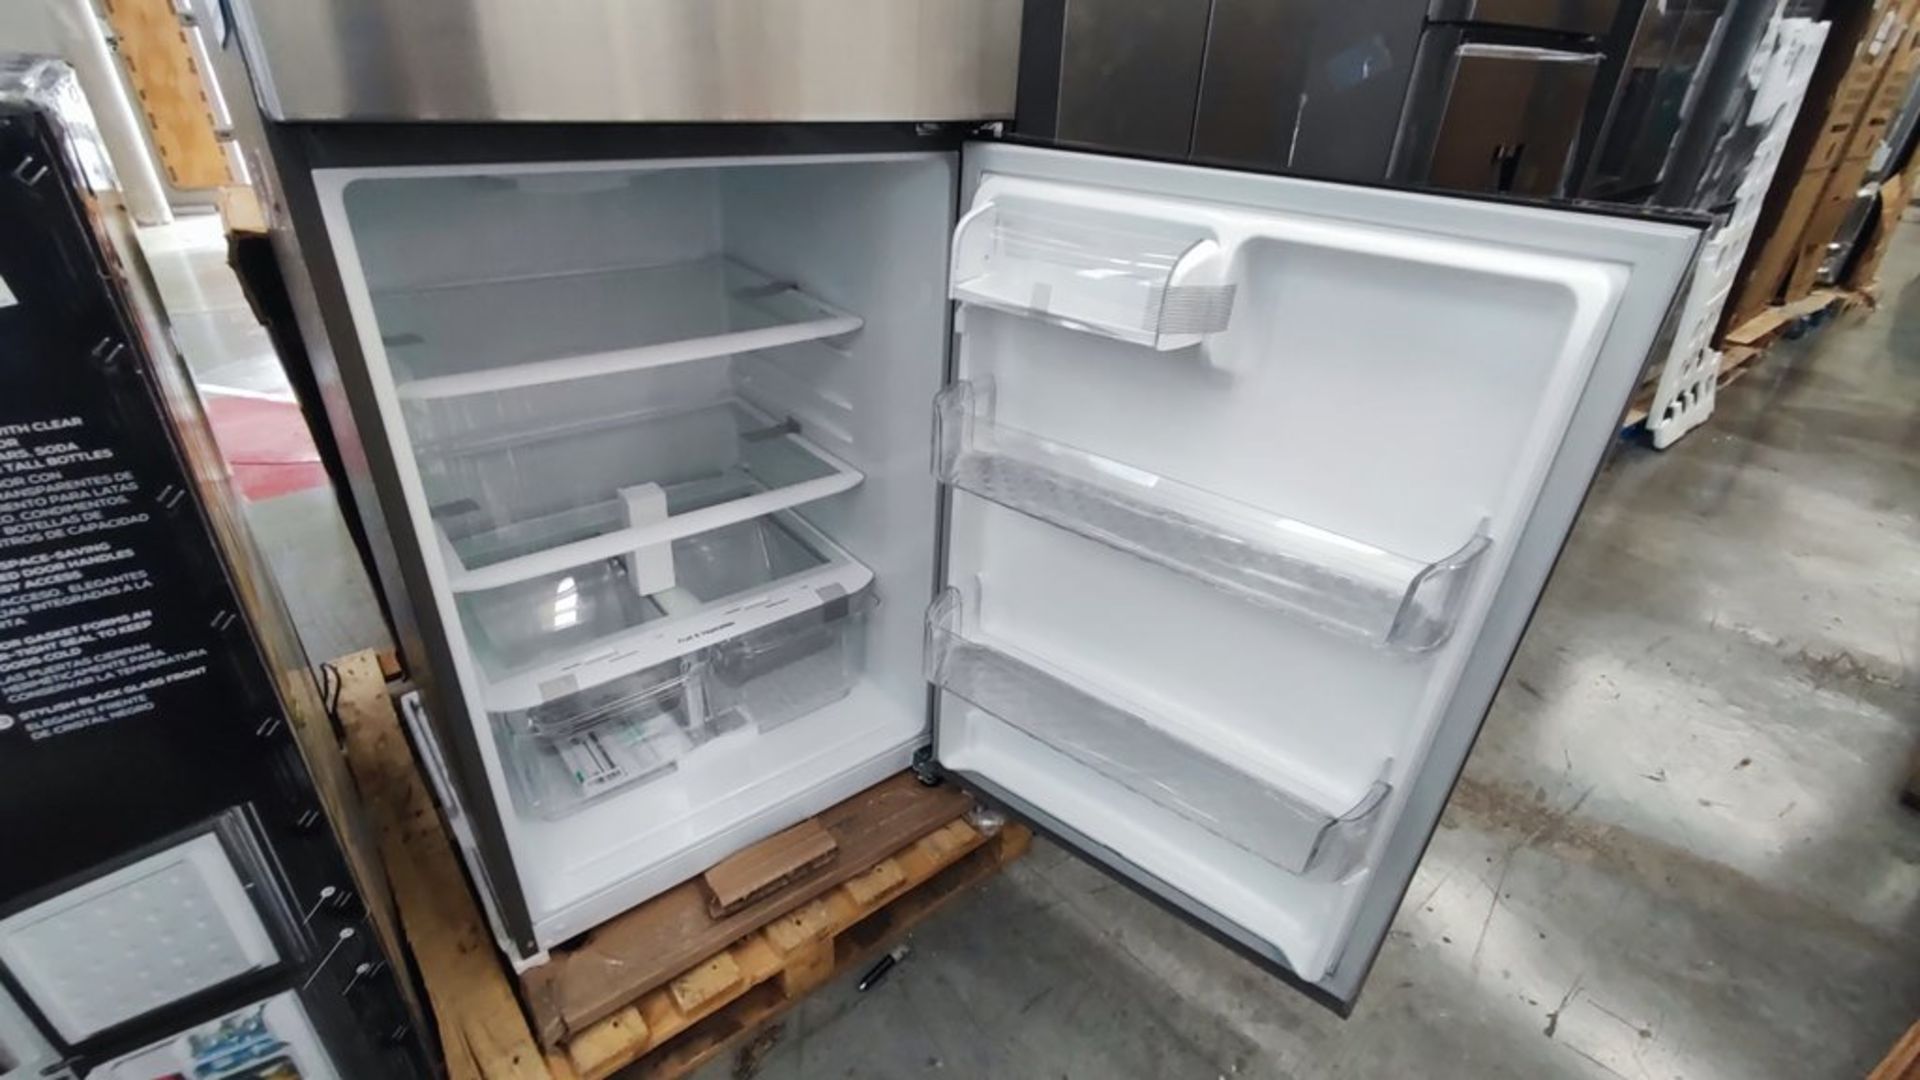 1 Refrigerador Marca LG, Modelo LT57BPSX, Serie 112MRVY1P862, Color Gris, Favor de inspeccionar. (N - Image 10 of 11